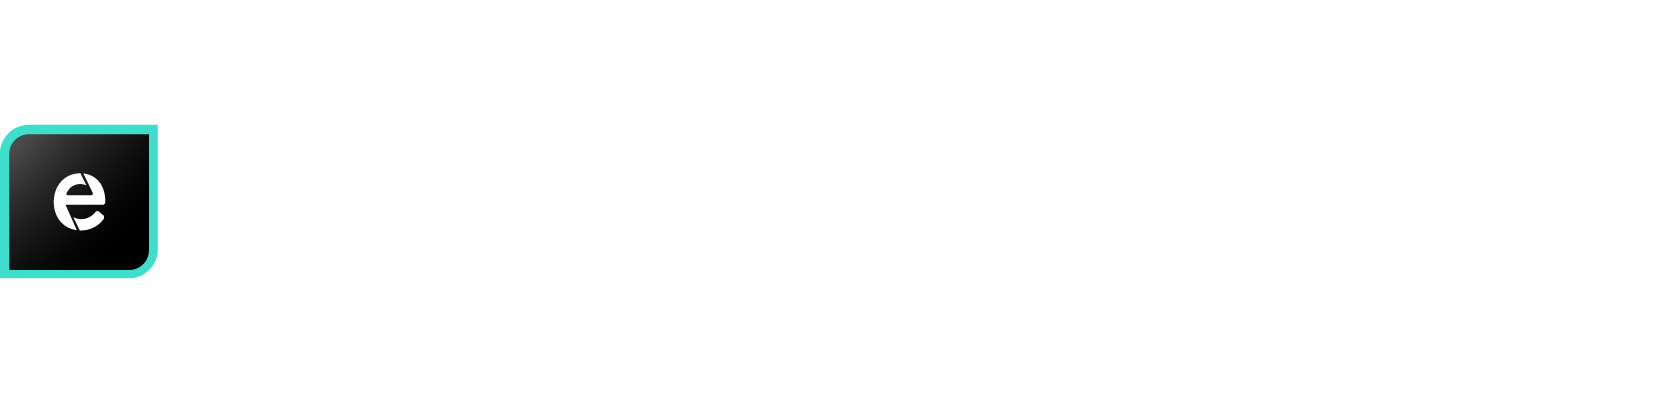 logo NODE-execute